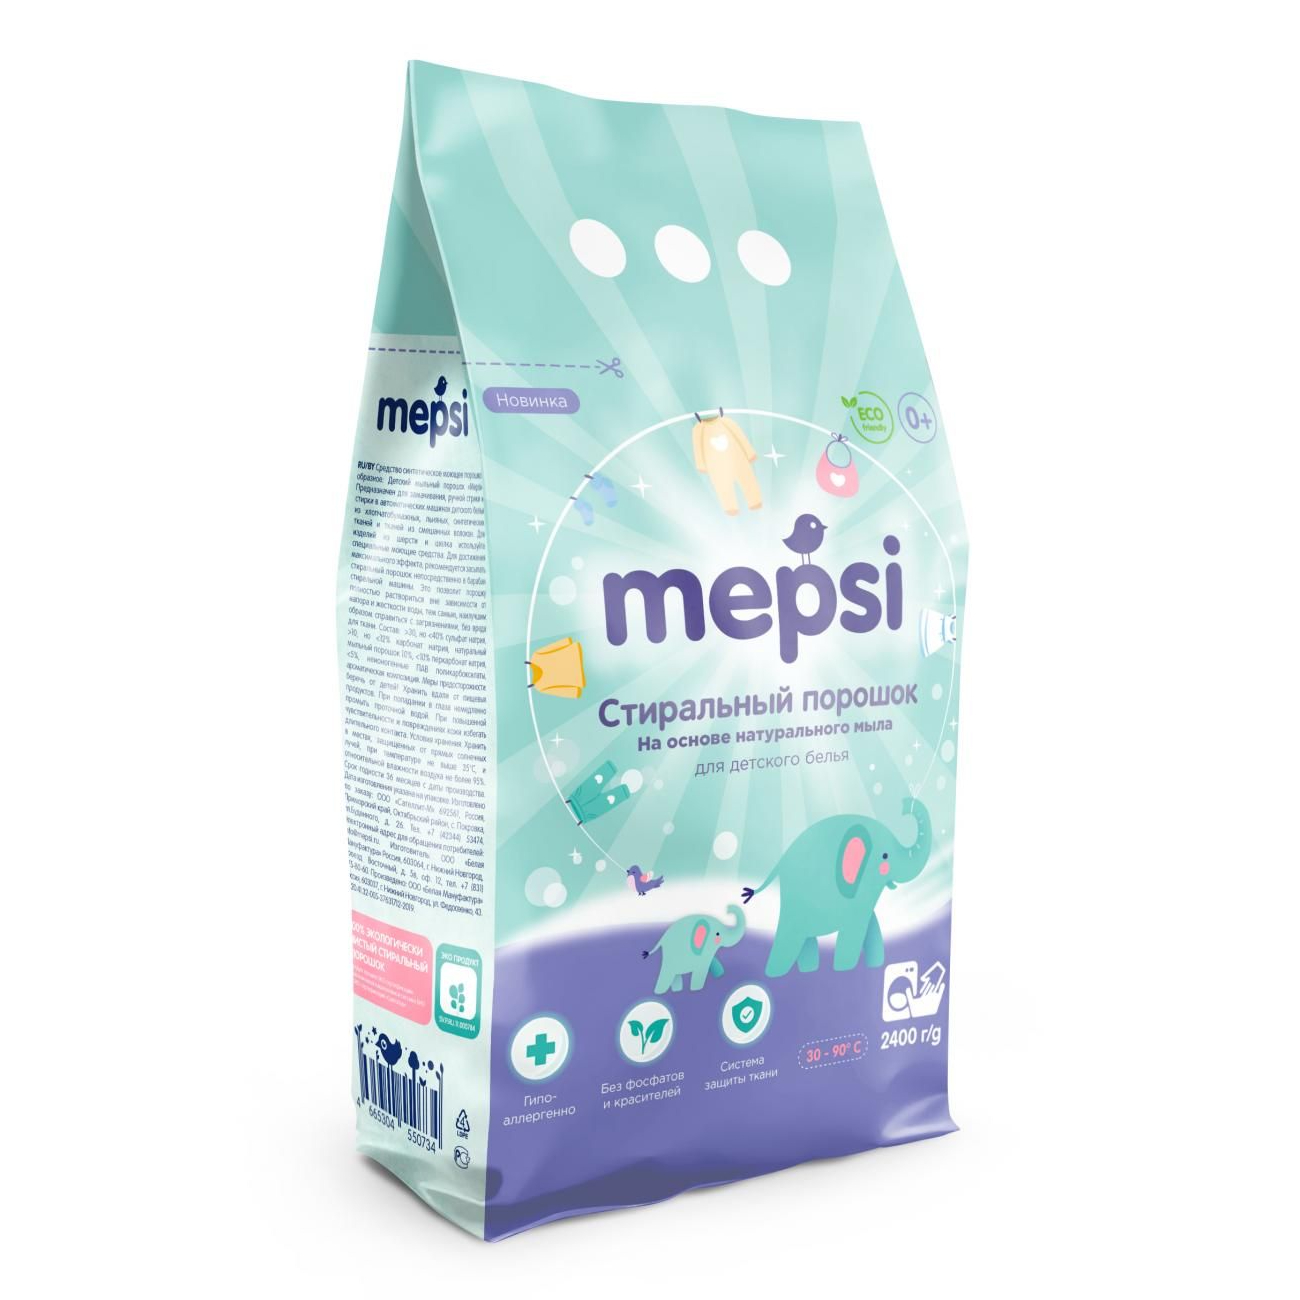 Стиральный порошок для детского белья Mepsi, на основе натурального мыла, гипоаллергенный, 2,4 кг